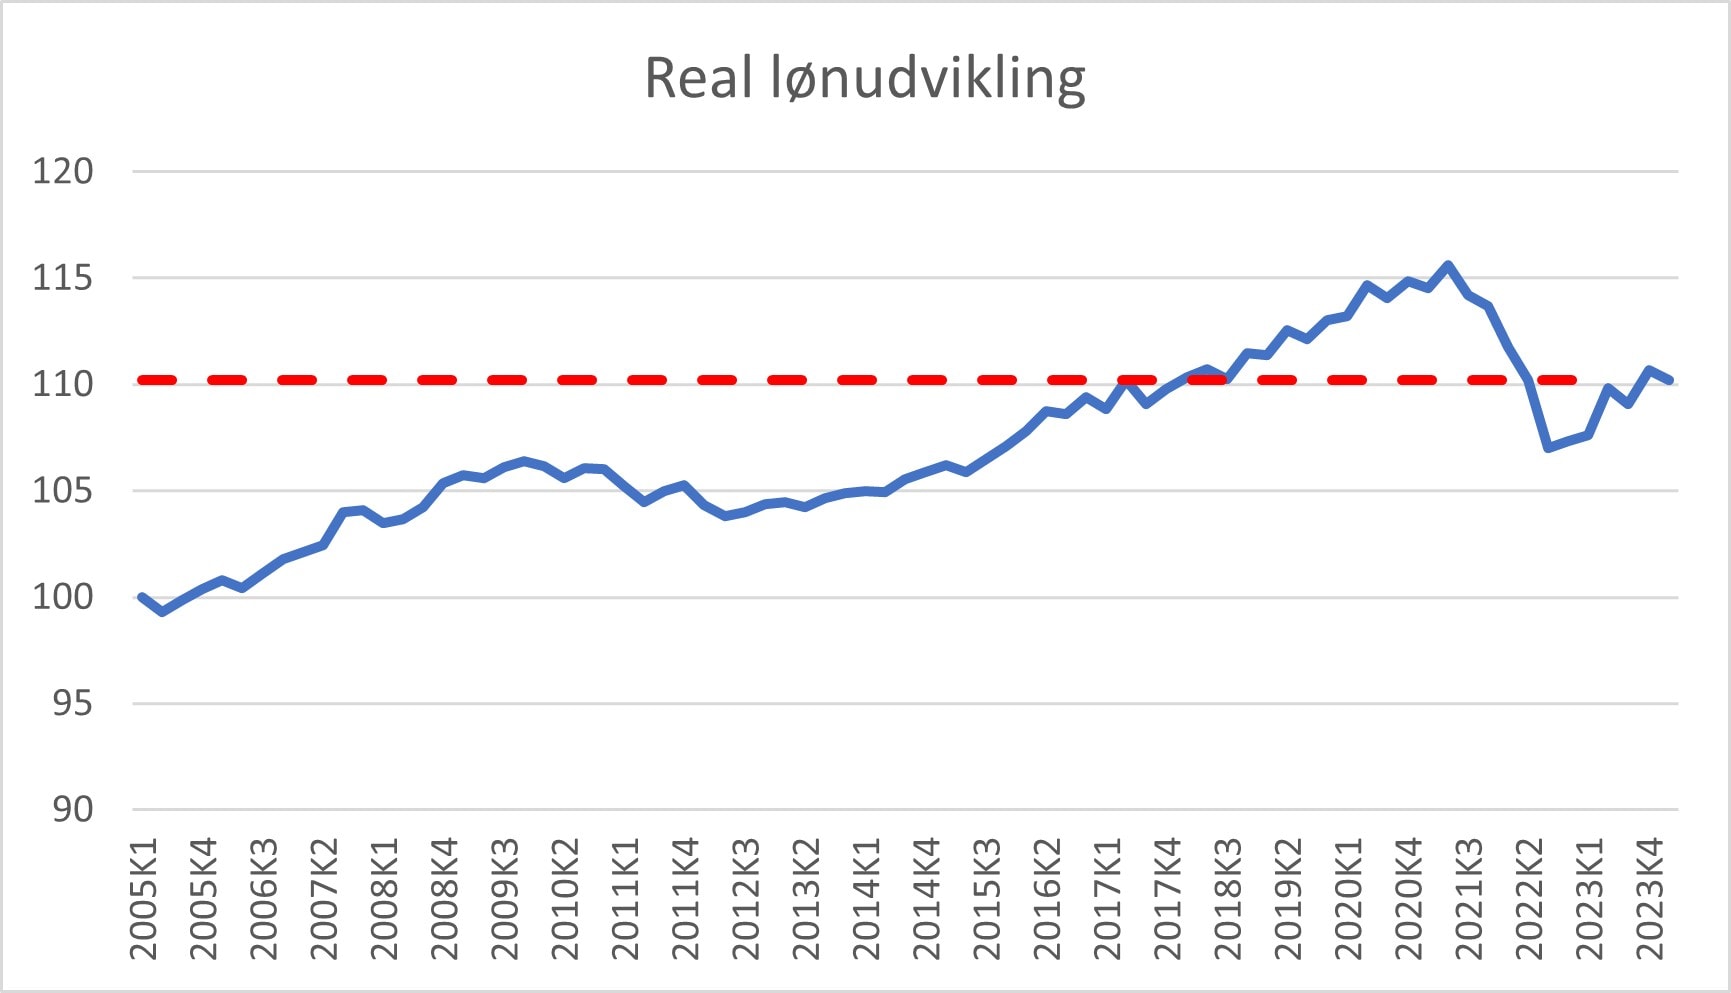 Graf over reallønudviklingen